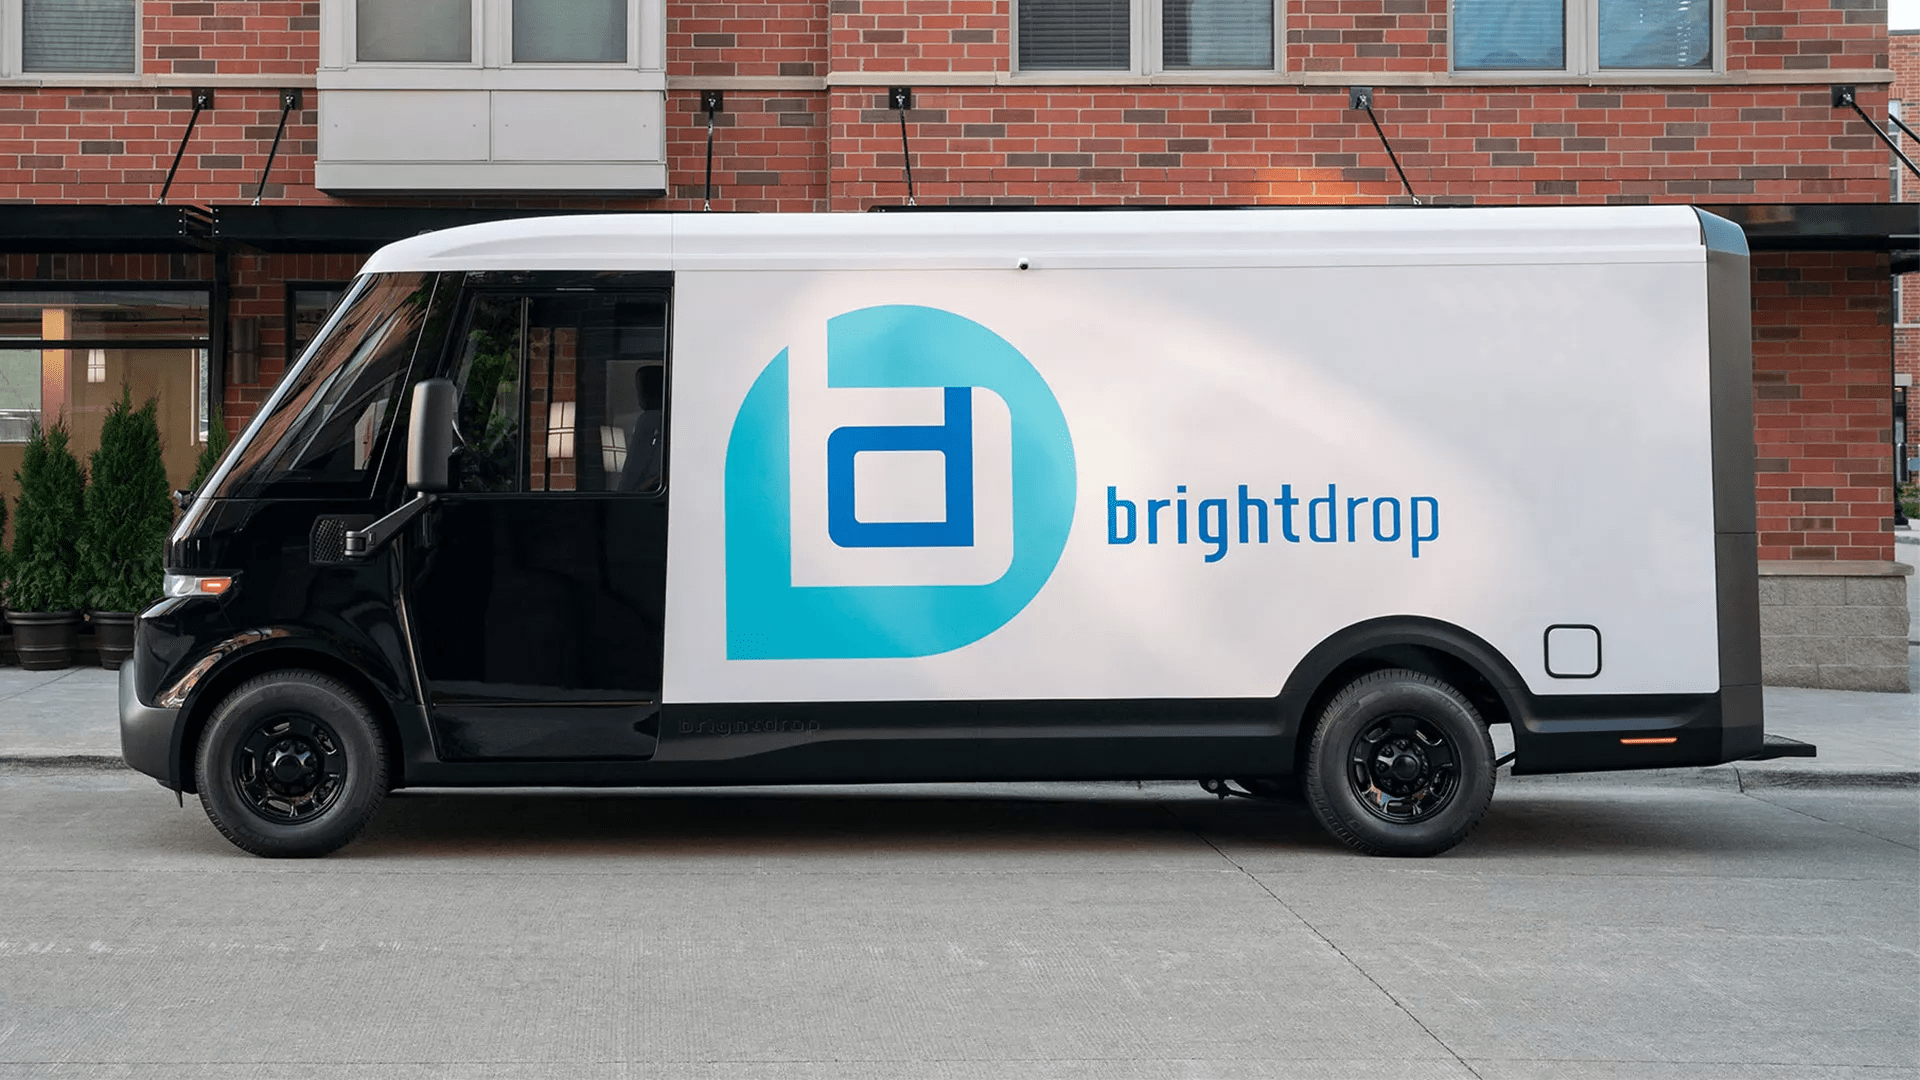 电动汽车初创公司 BrightDrop 正式成为通用汽车的一部分